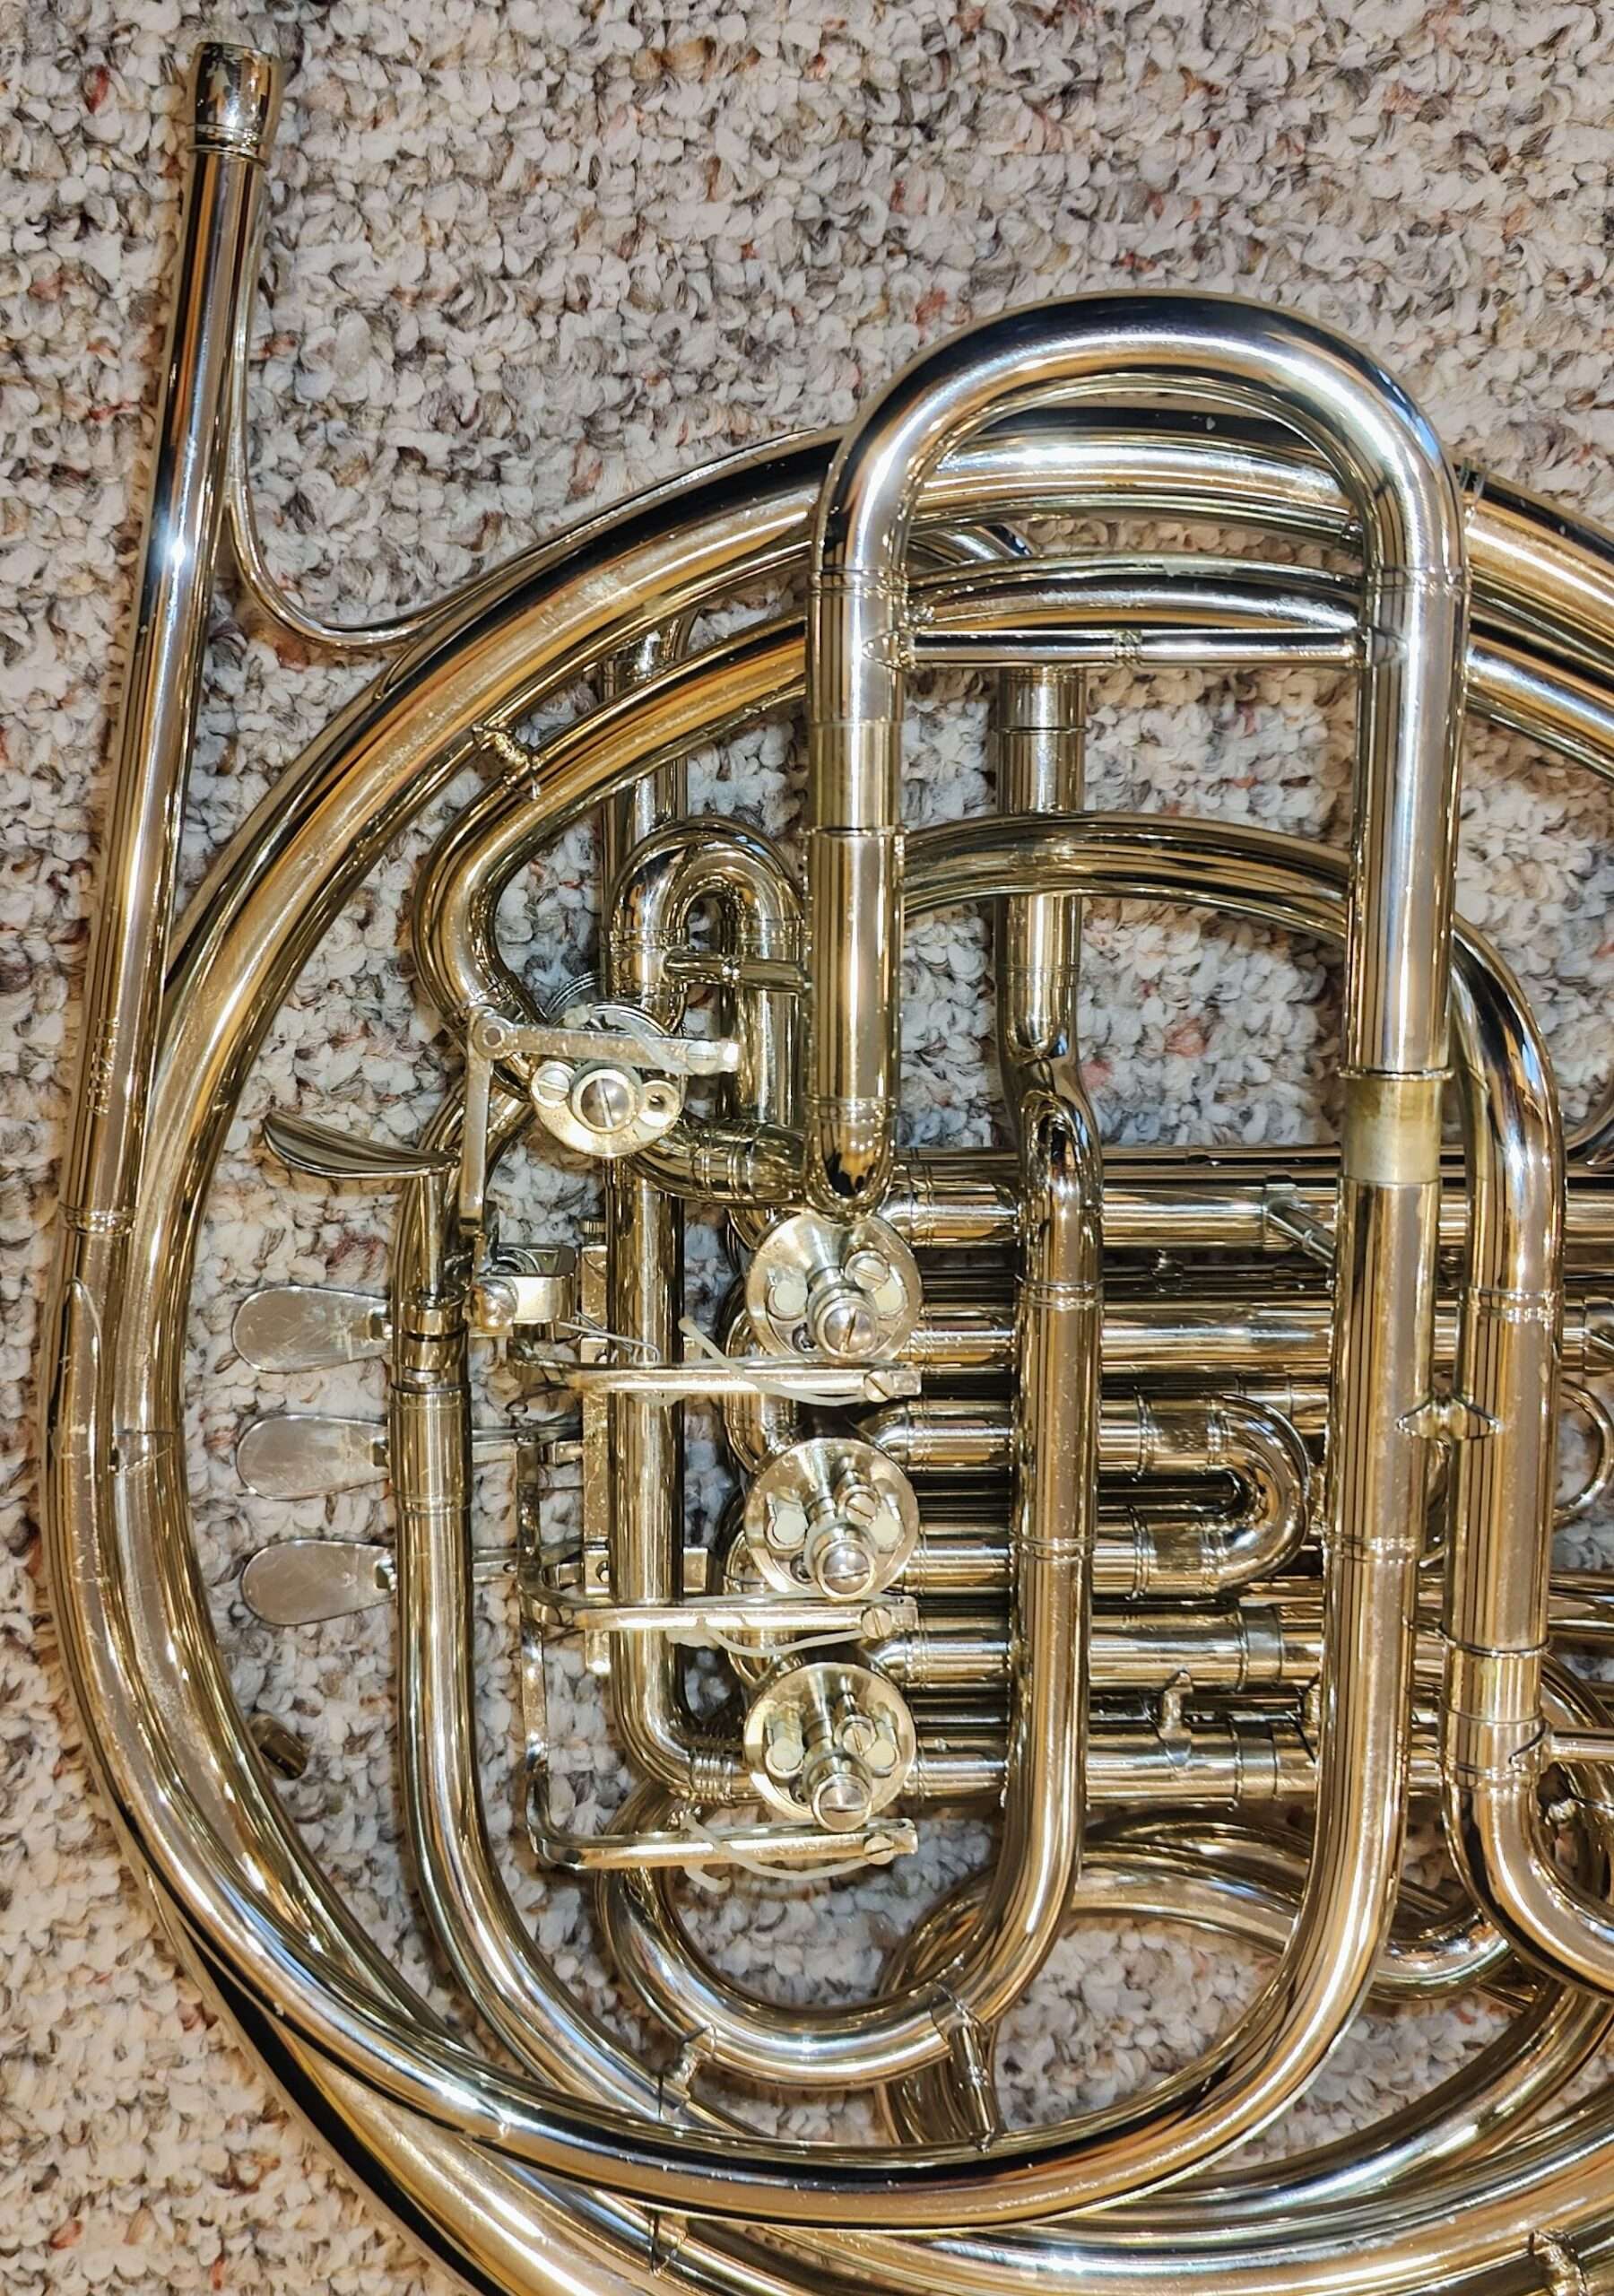 The Horn Guys - Hans Hoyer Heritage 6802GA-L Gold Brass Double Horn